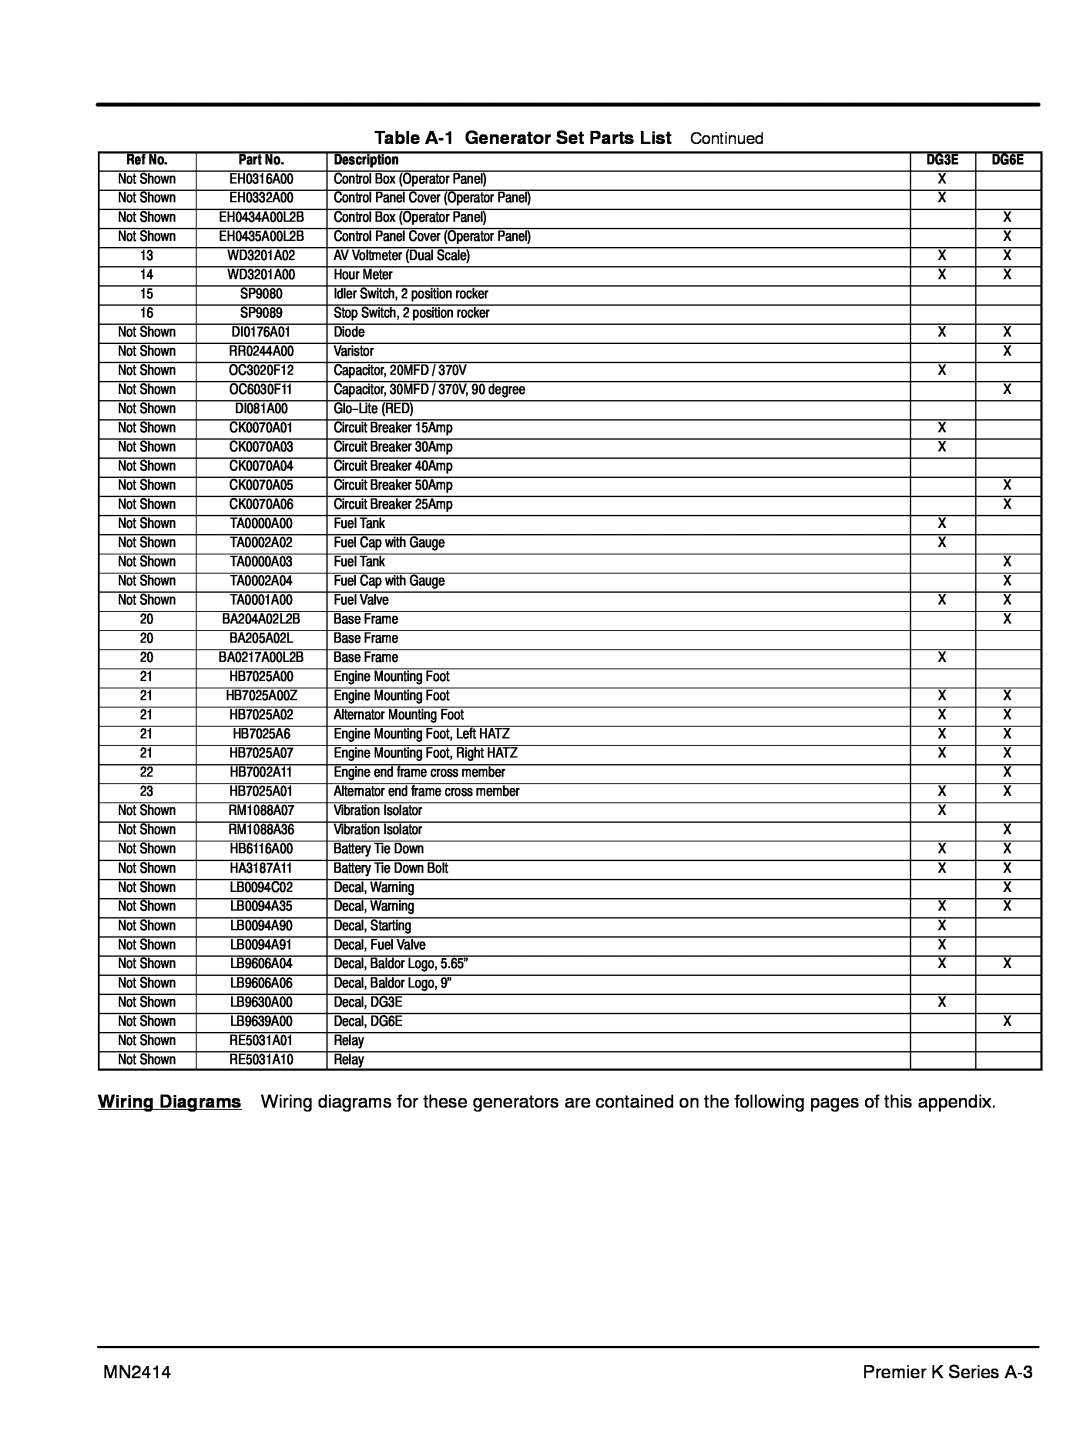 Baldor DG6E, DG3E manual Table A-1 Generator Set Parts List, Continued 